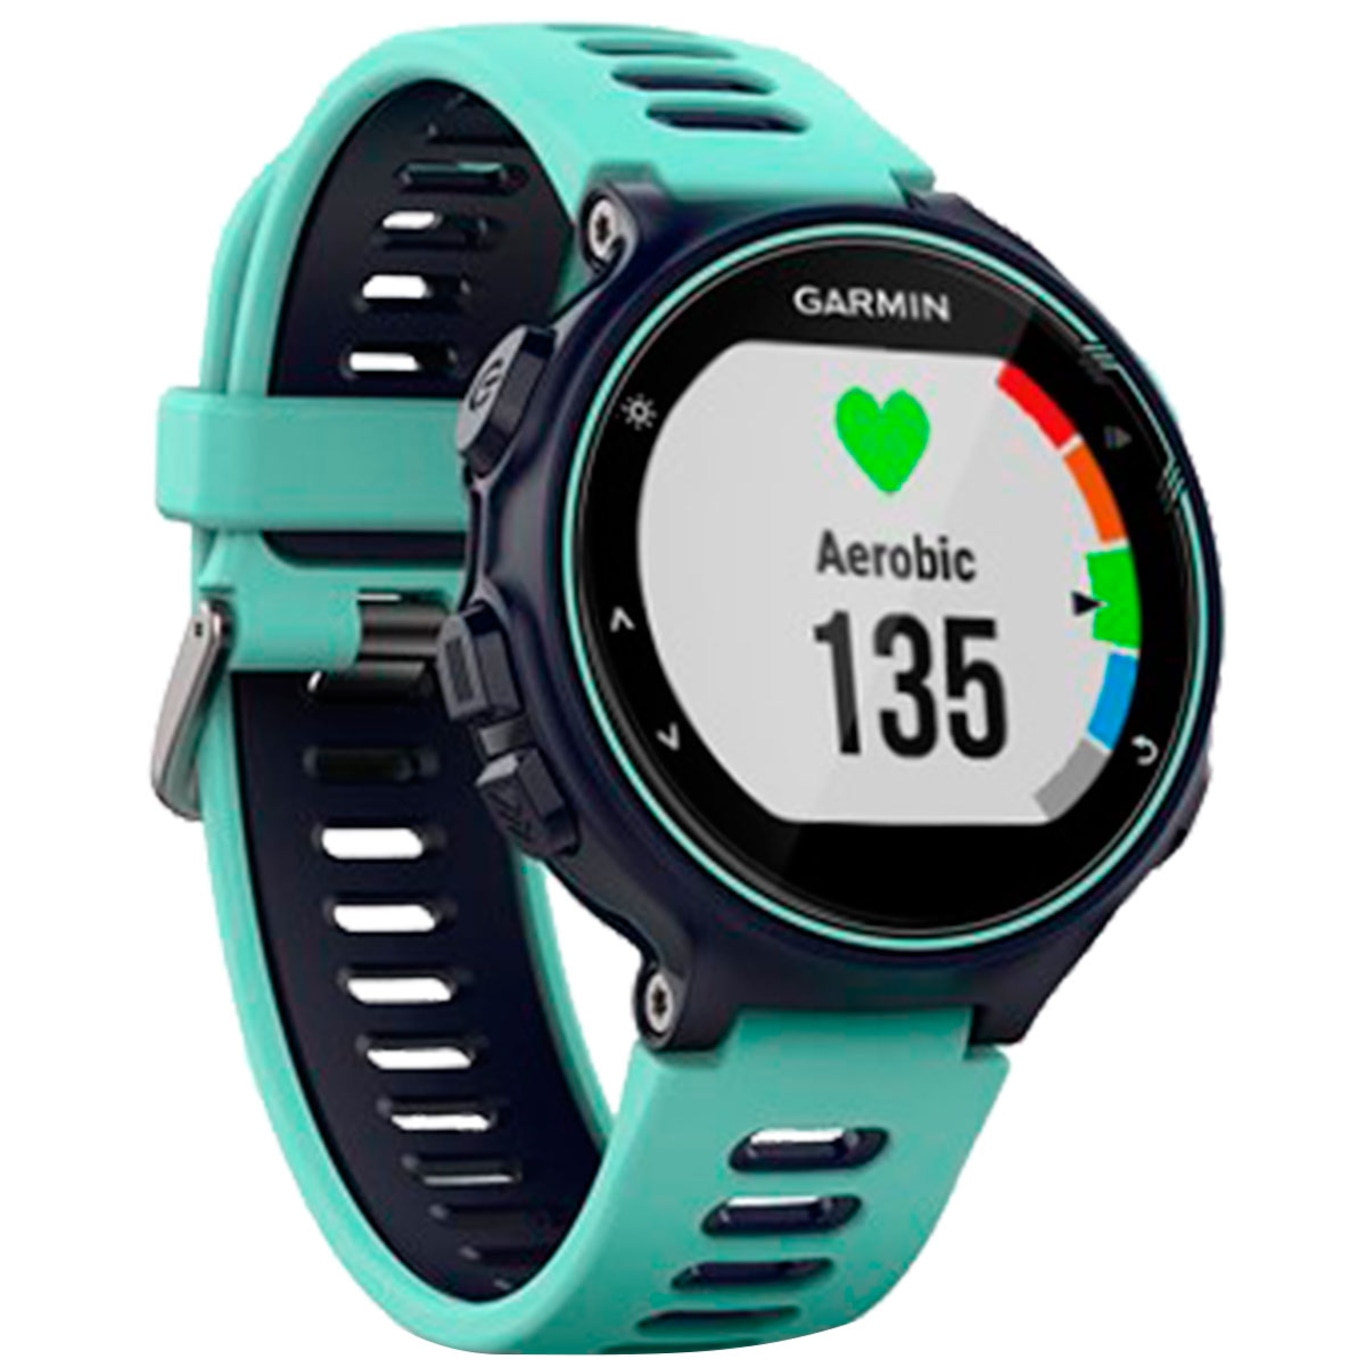 Garmin - Conheça as funcionalidades do Forerunner 735XT. Seu relógio  multiesporte com GPS com tecnologia de frequência cardíaca no pulso Garmin  Elevate™. Obtenha dados avançados de dinâmicas de corrida, VO2 max e